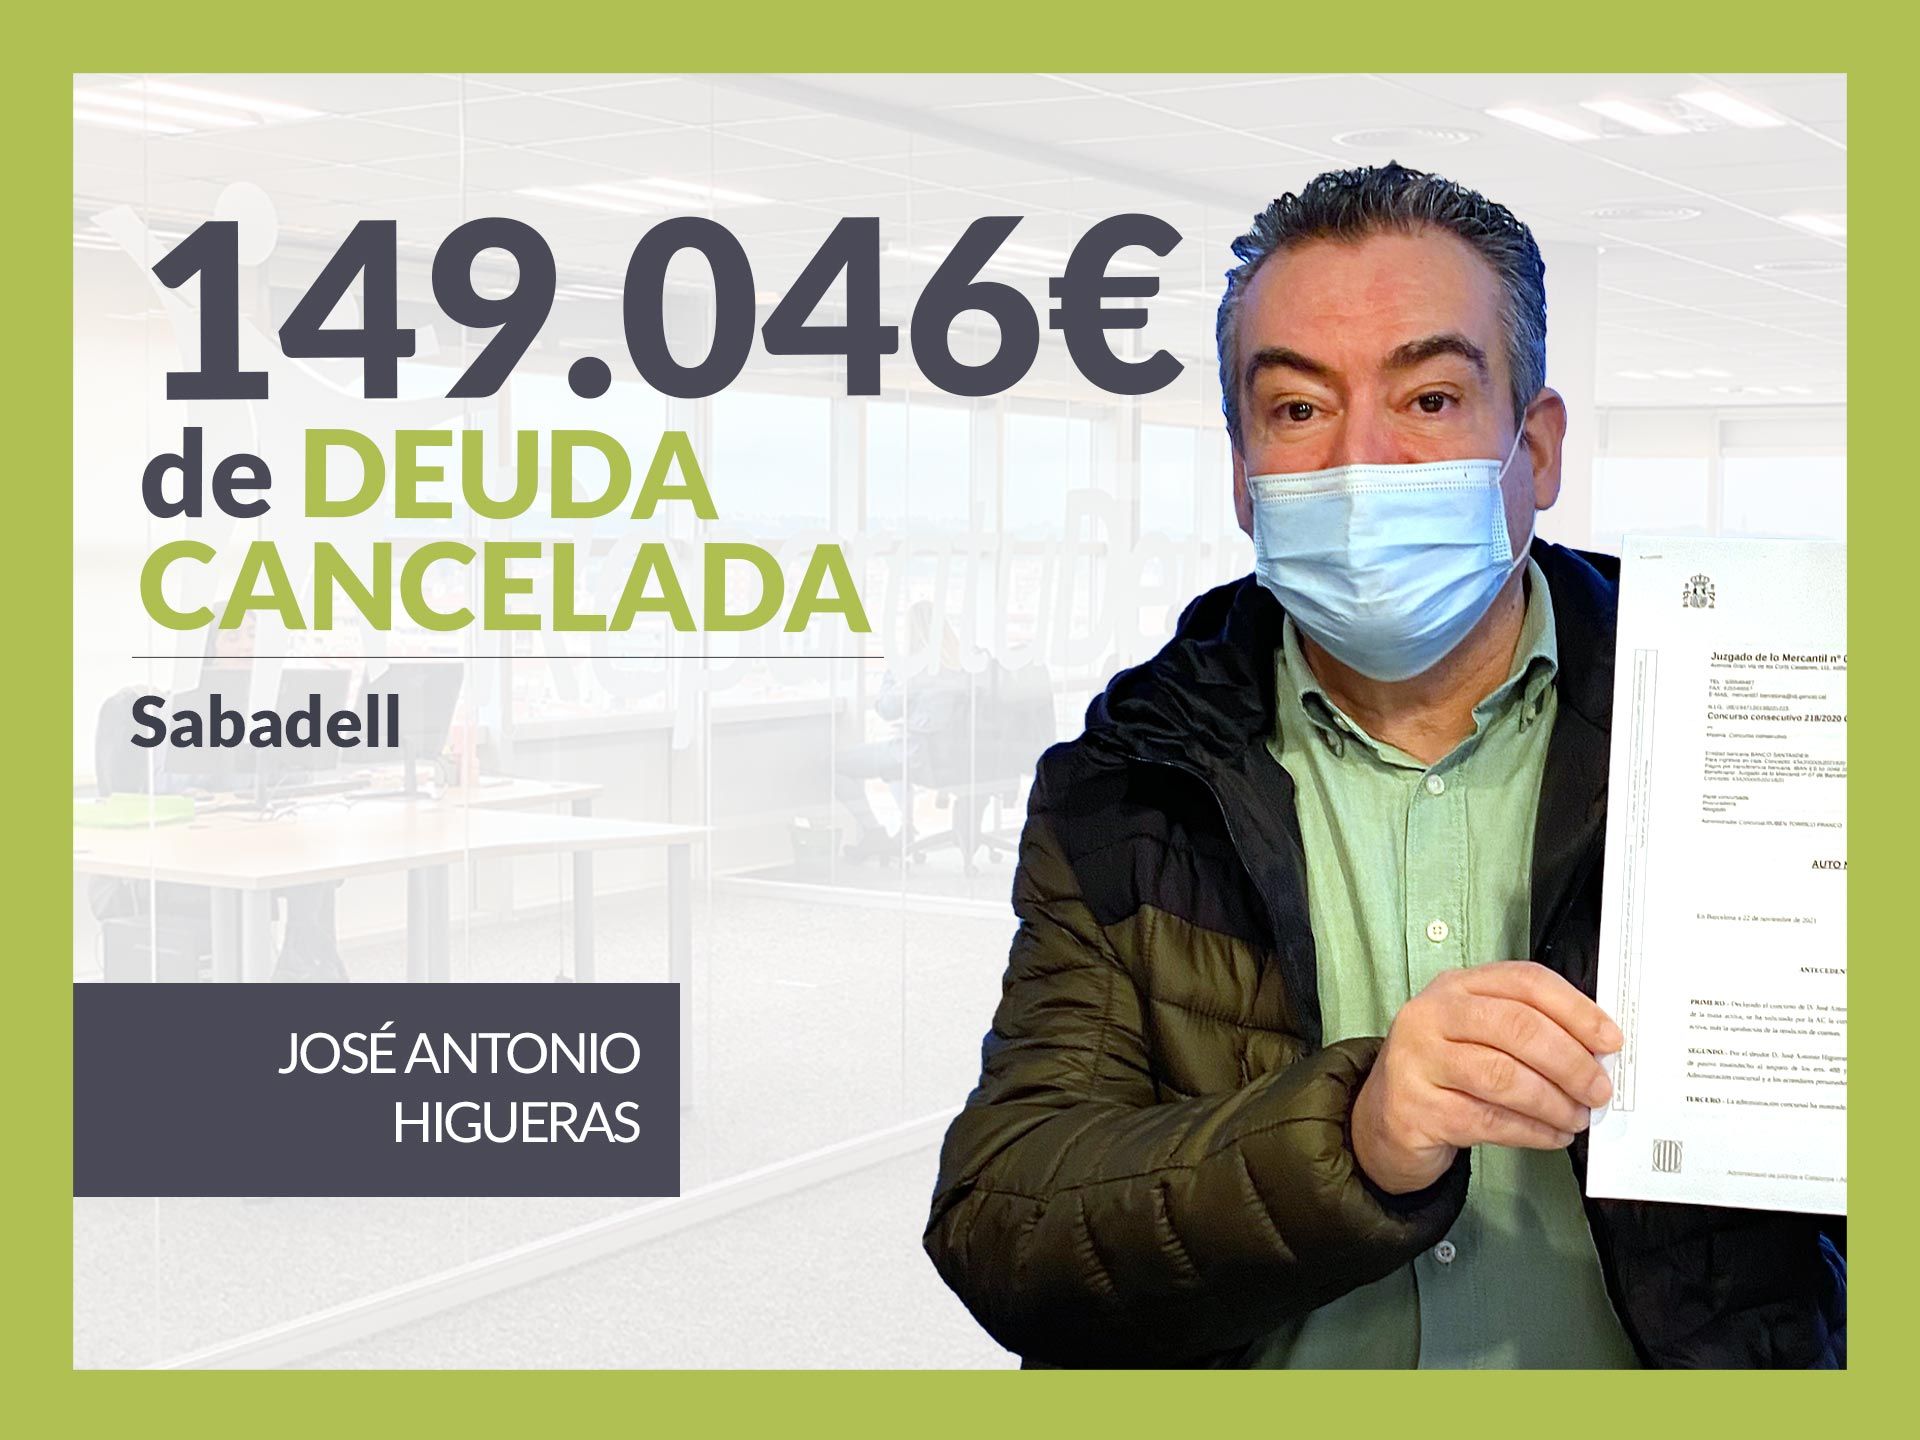 Repara tu Deuda Abogados cancela 149.046? en Sabadell (Barcelona) con la Ley de Segunda Oportunidad